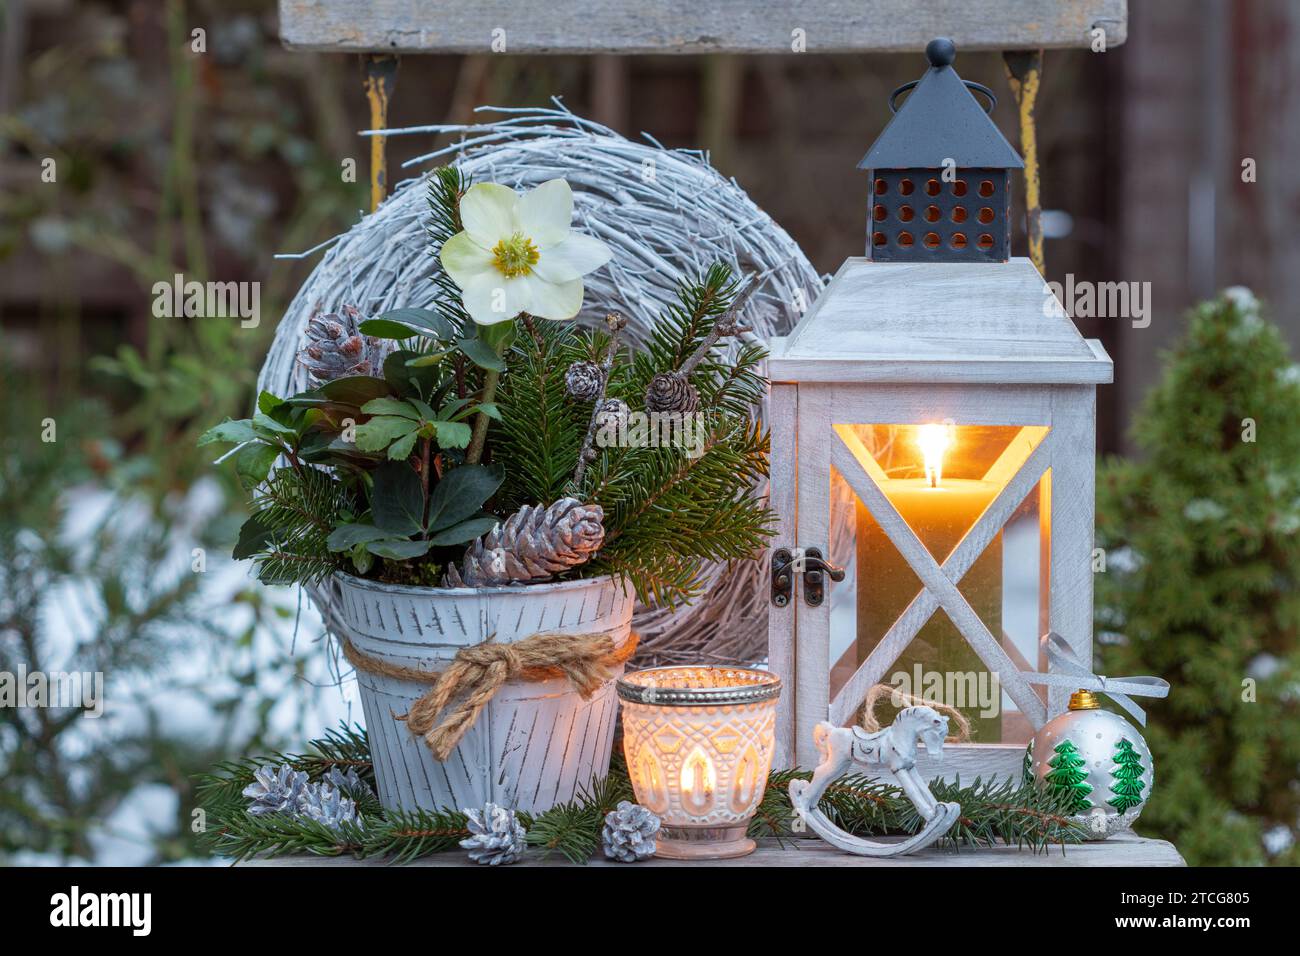 sistemazione natalizia con helleborus niger, rami di abete e lanterna di legno Foto Stock